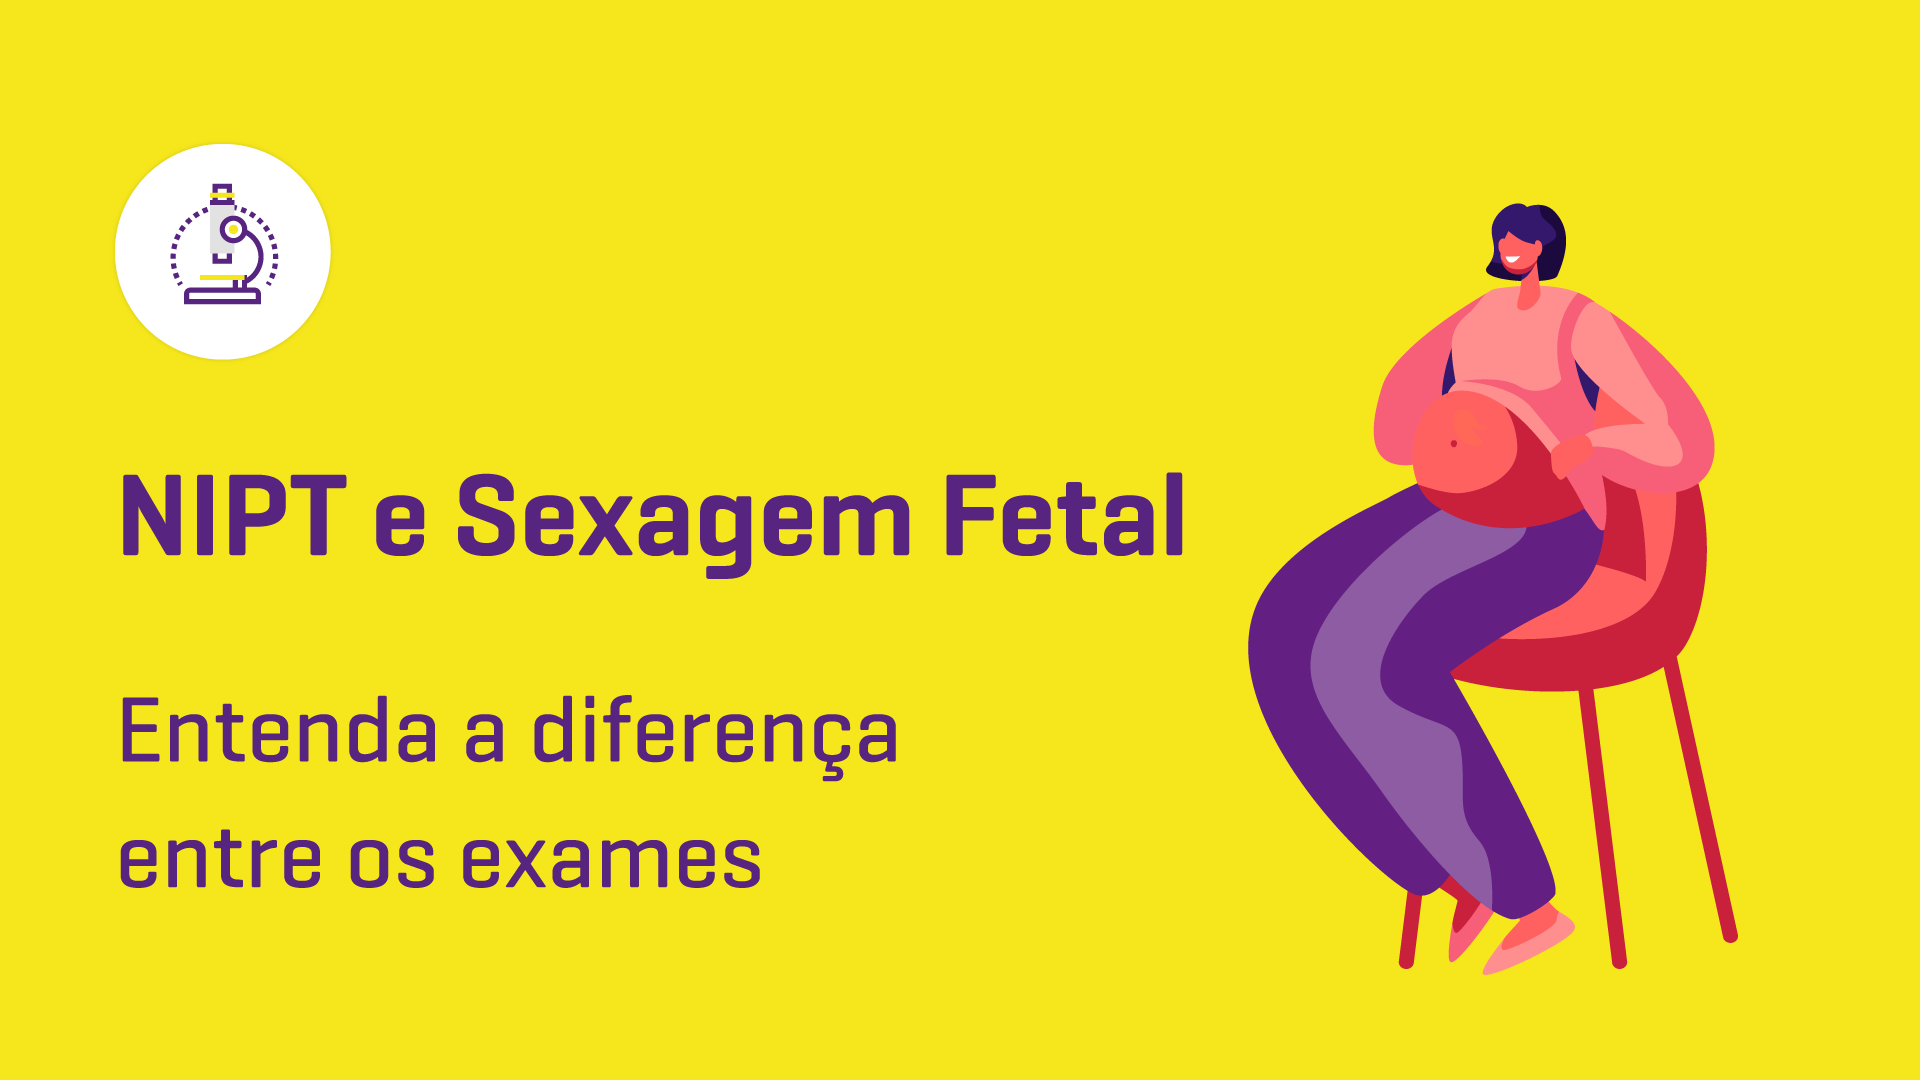 Sexagem fetal e NIPT: entenda as diferenças entre os exames